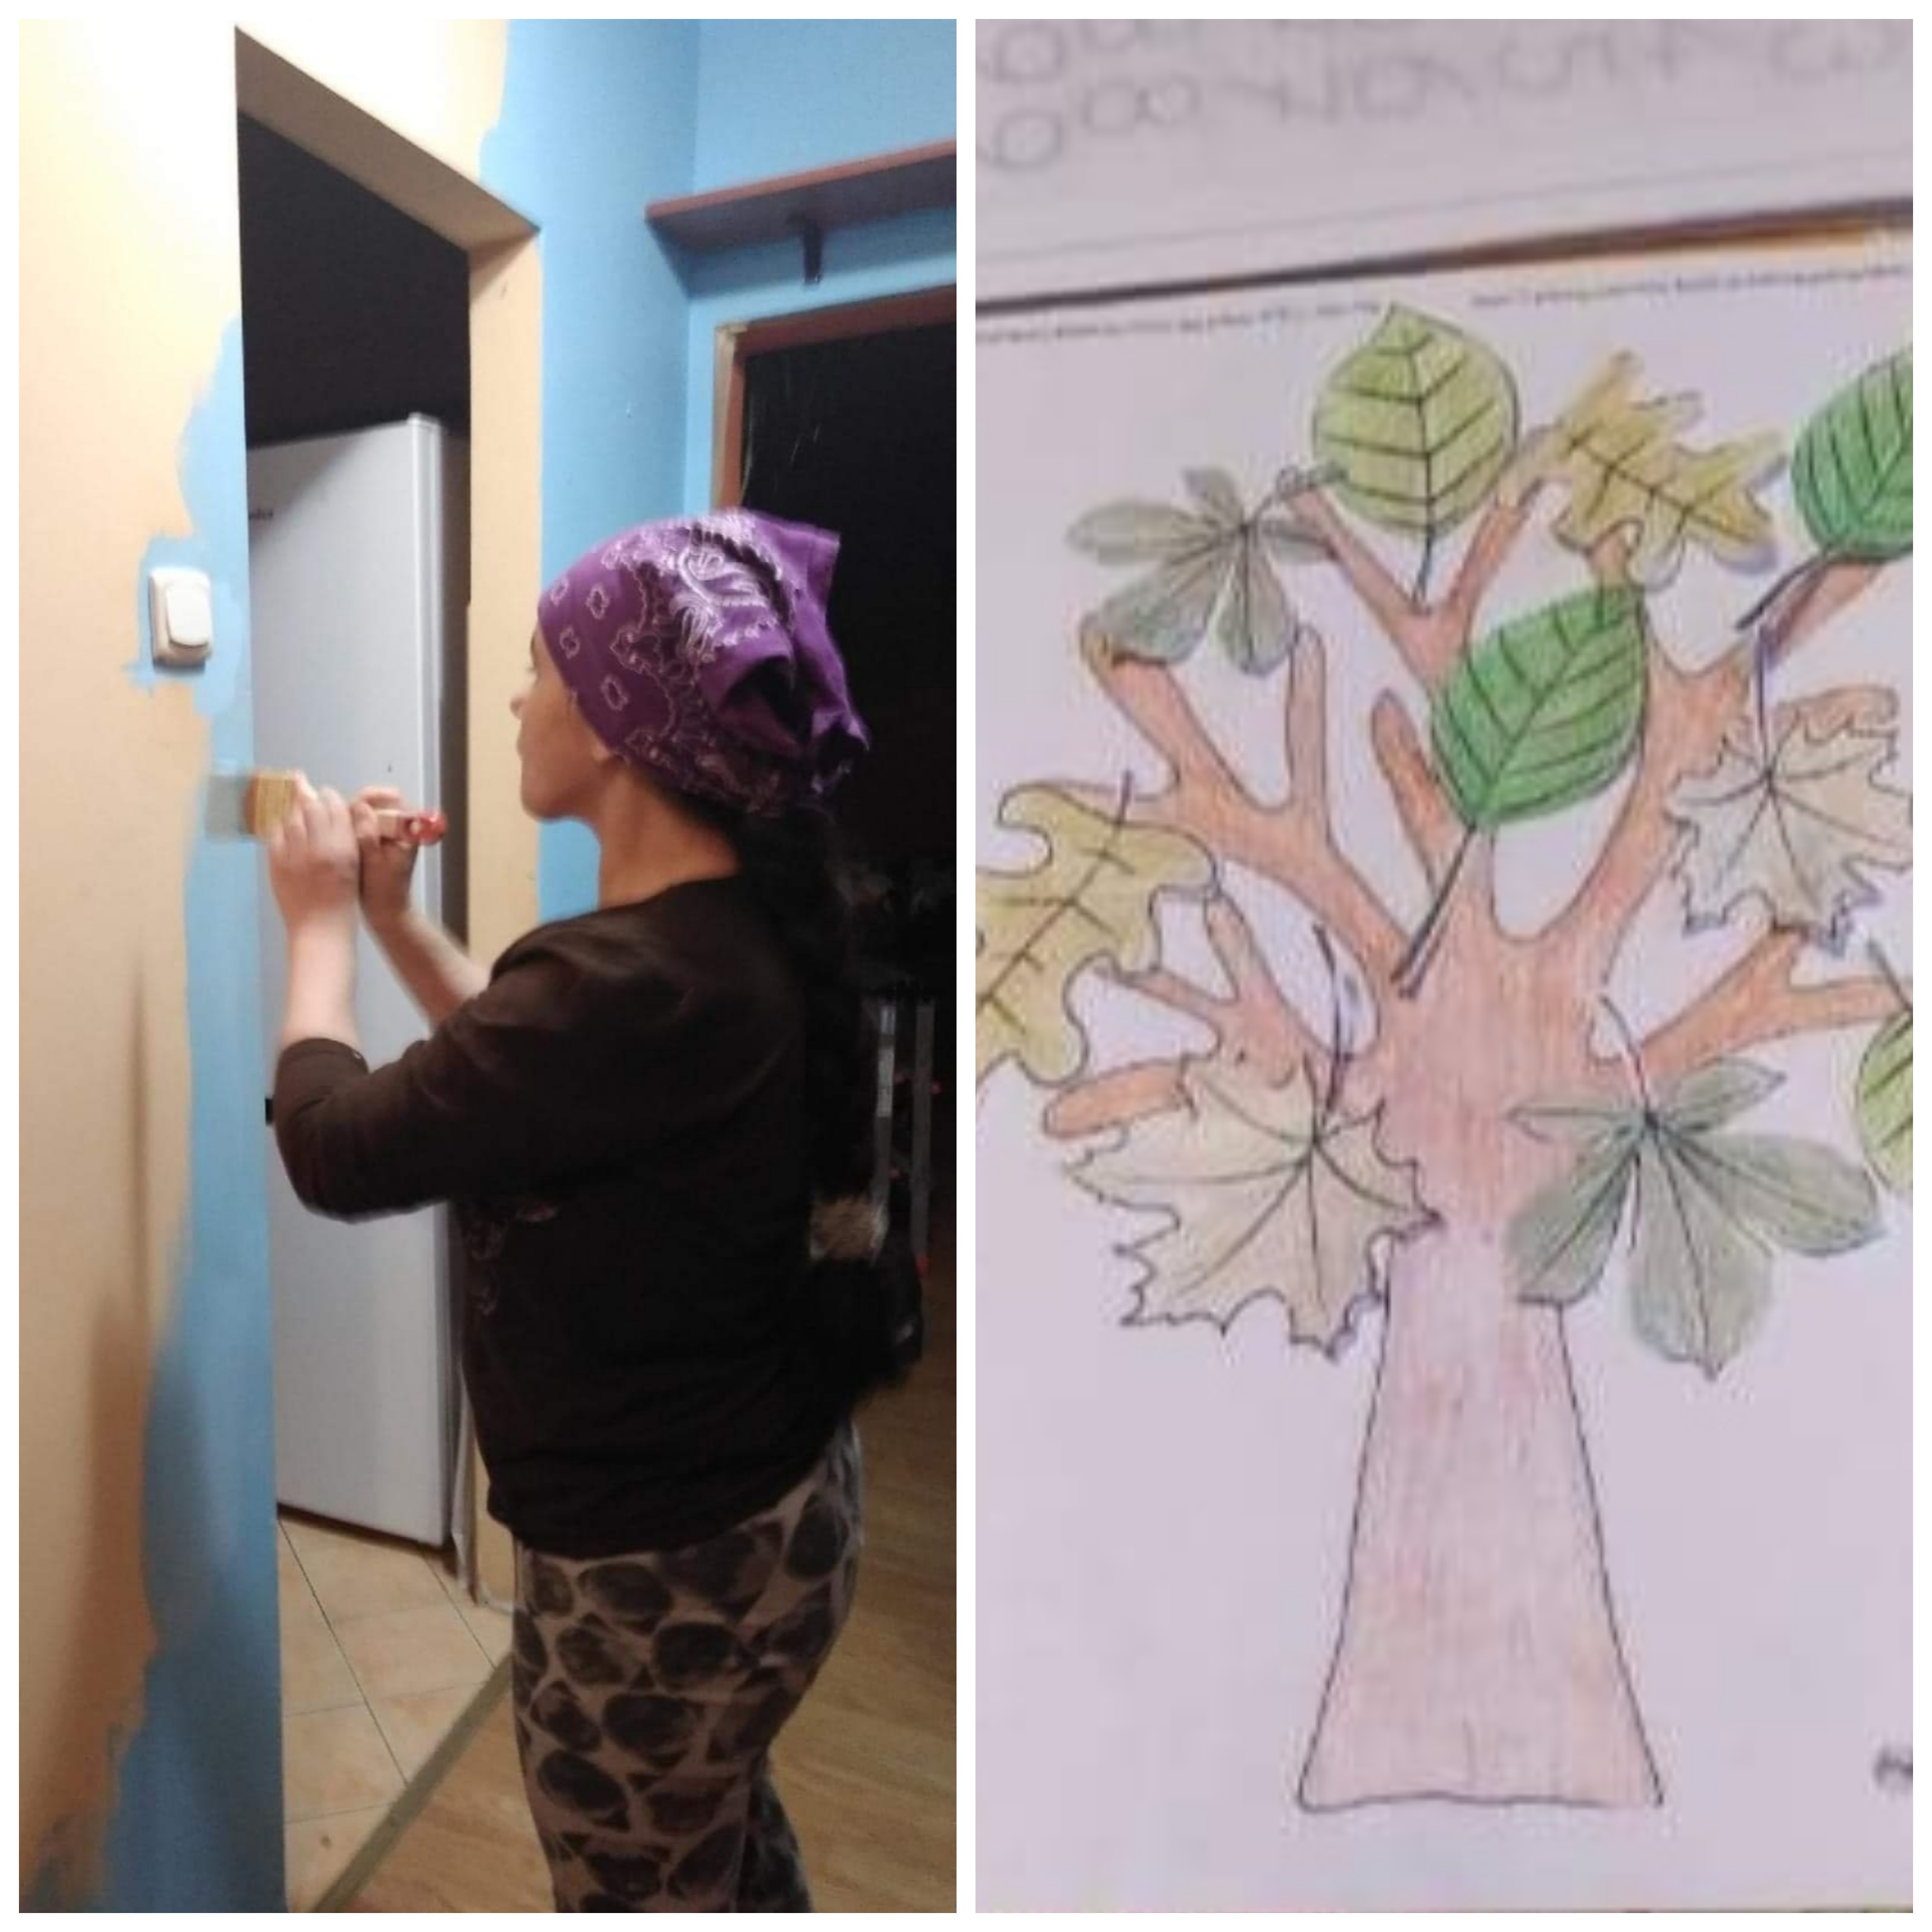 Kobieta maluje futrynę drzwi, drugie zdjęcie ,rysunek drzewa.